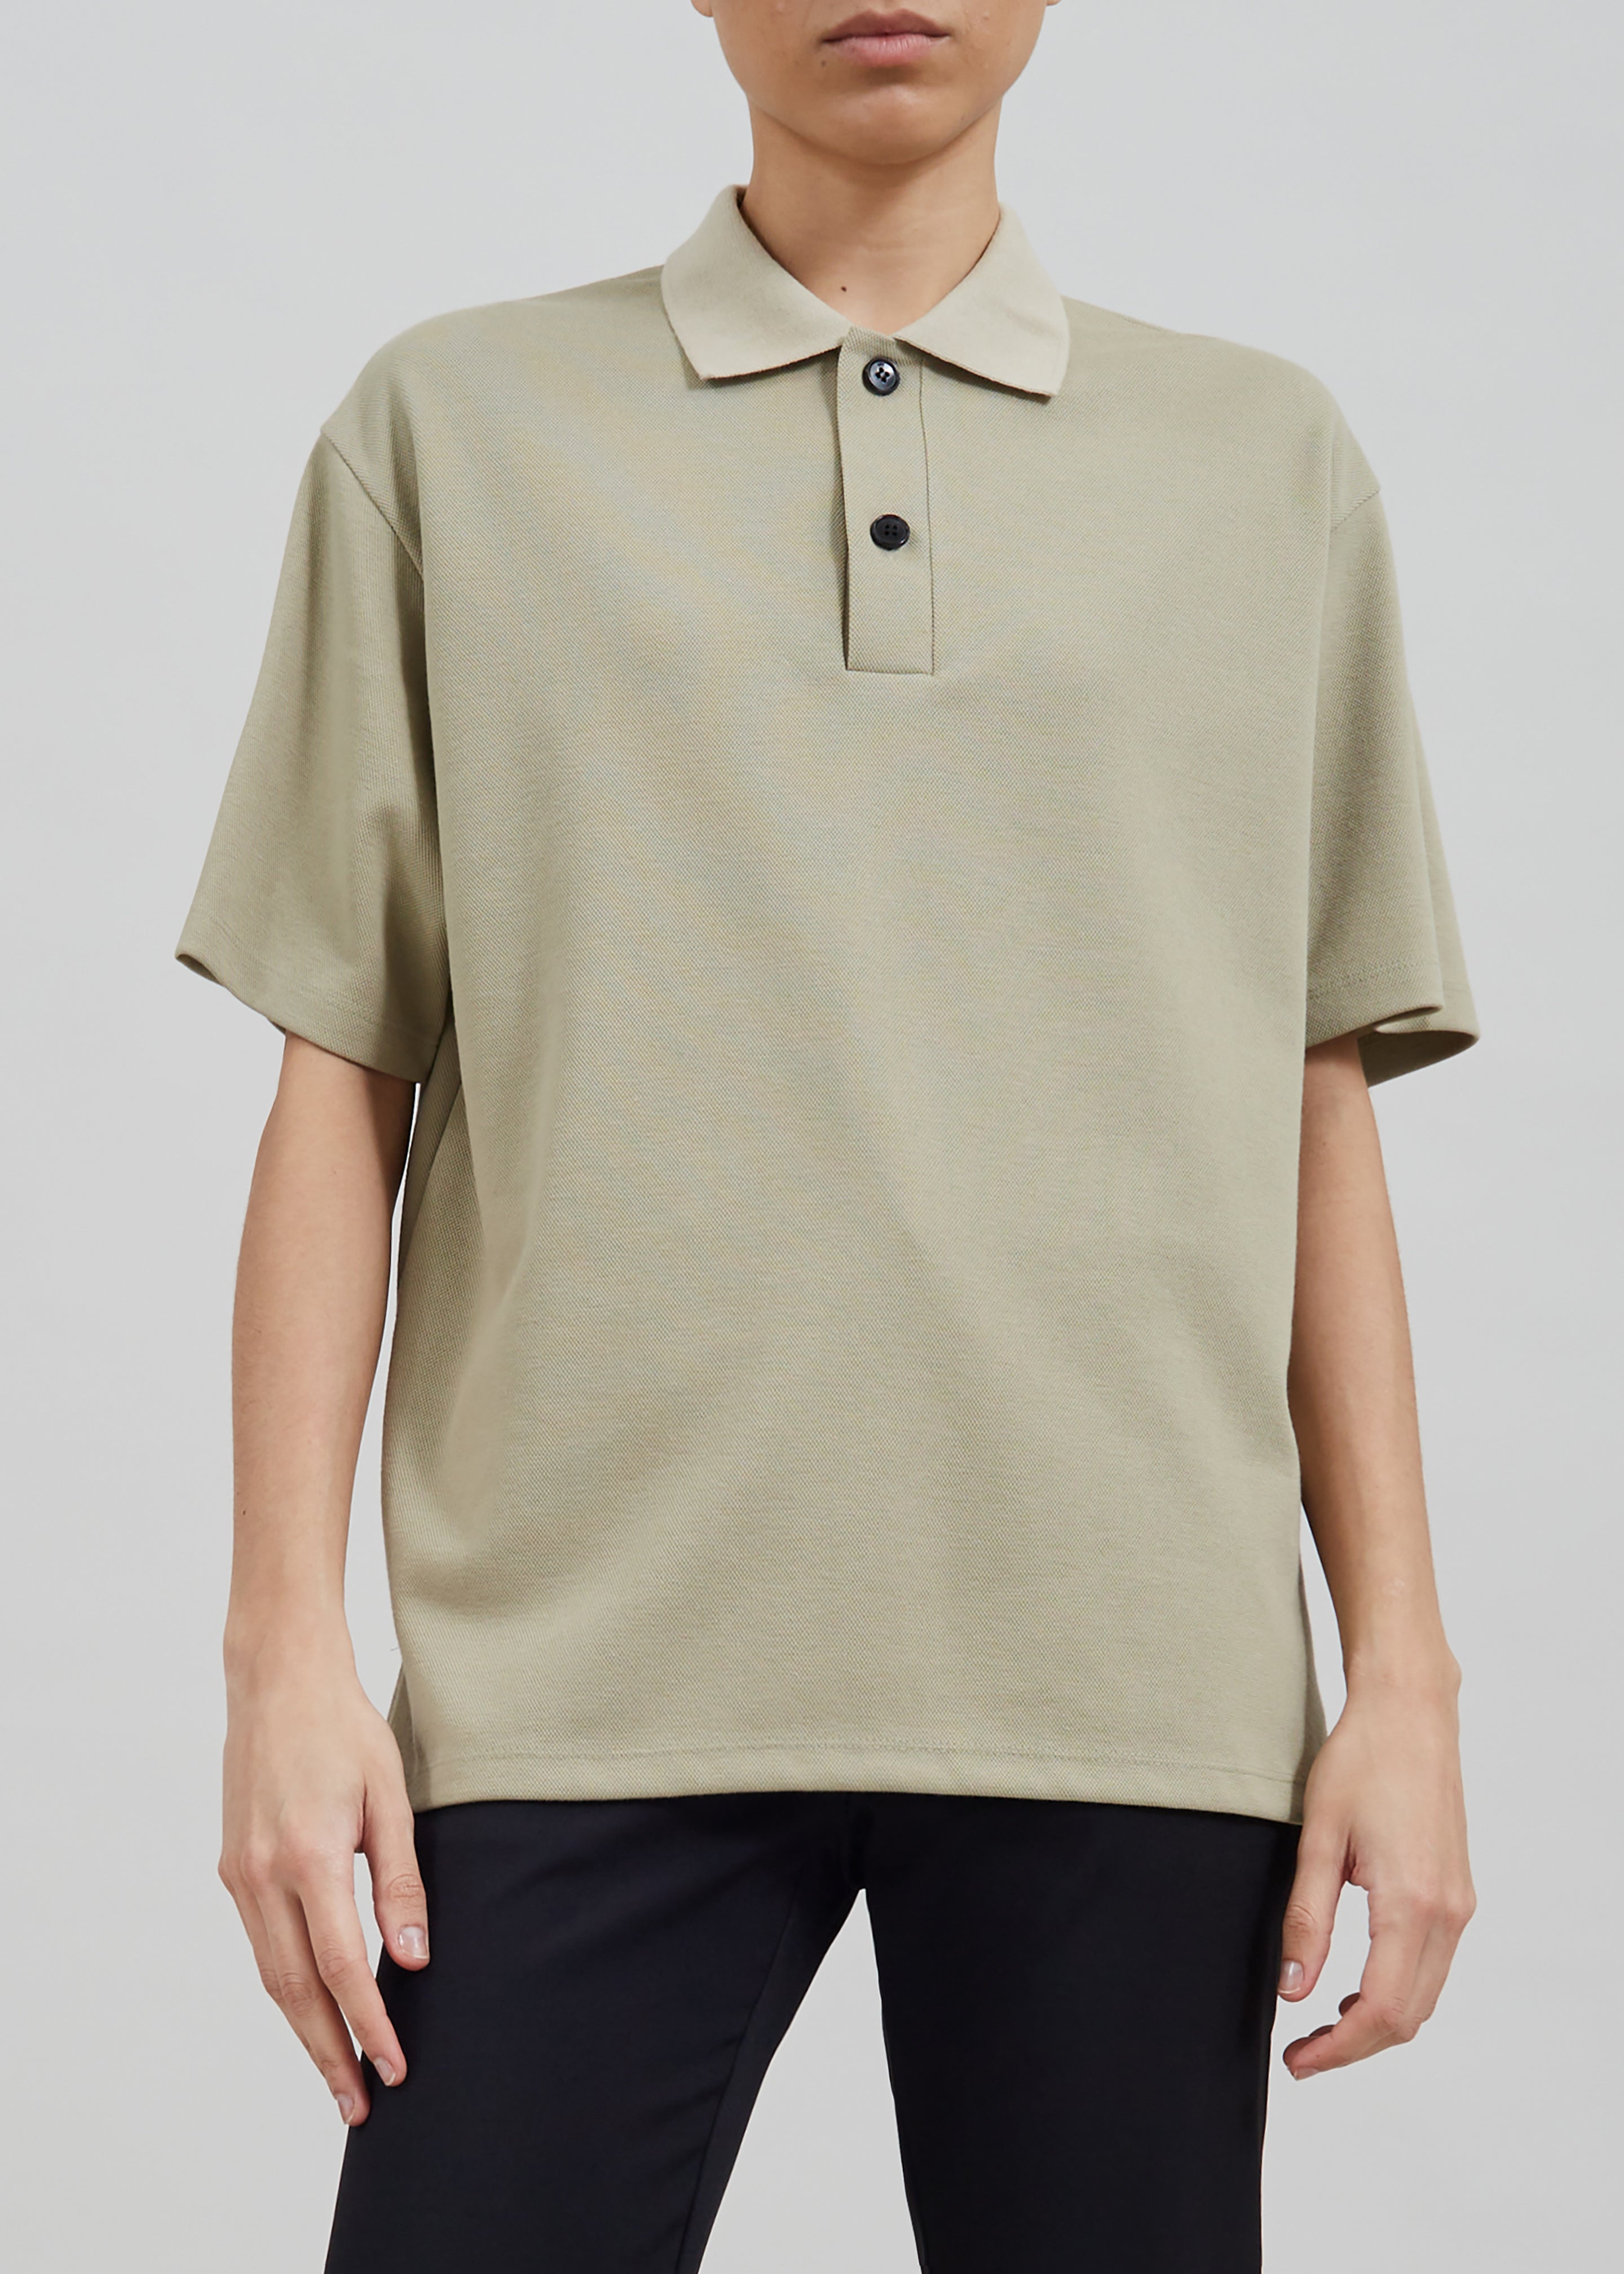 Dianne Polo Shirt - Khaki - 4